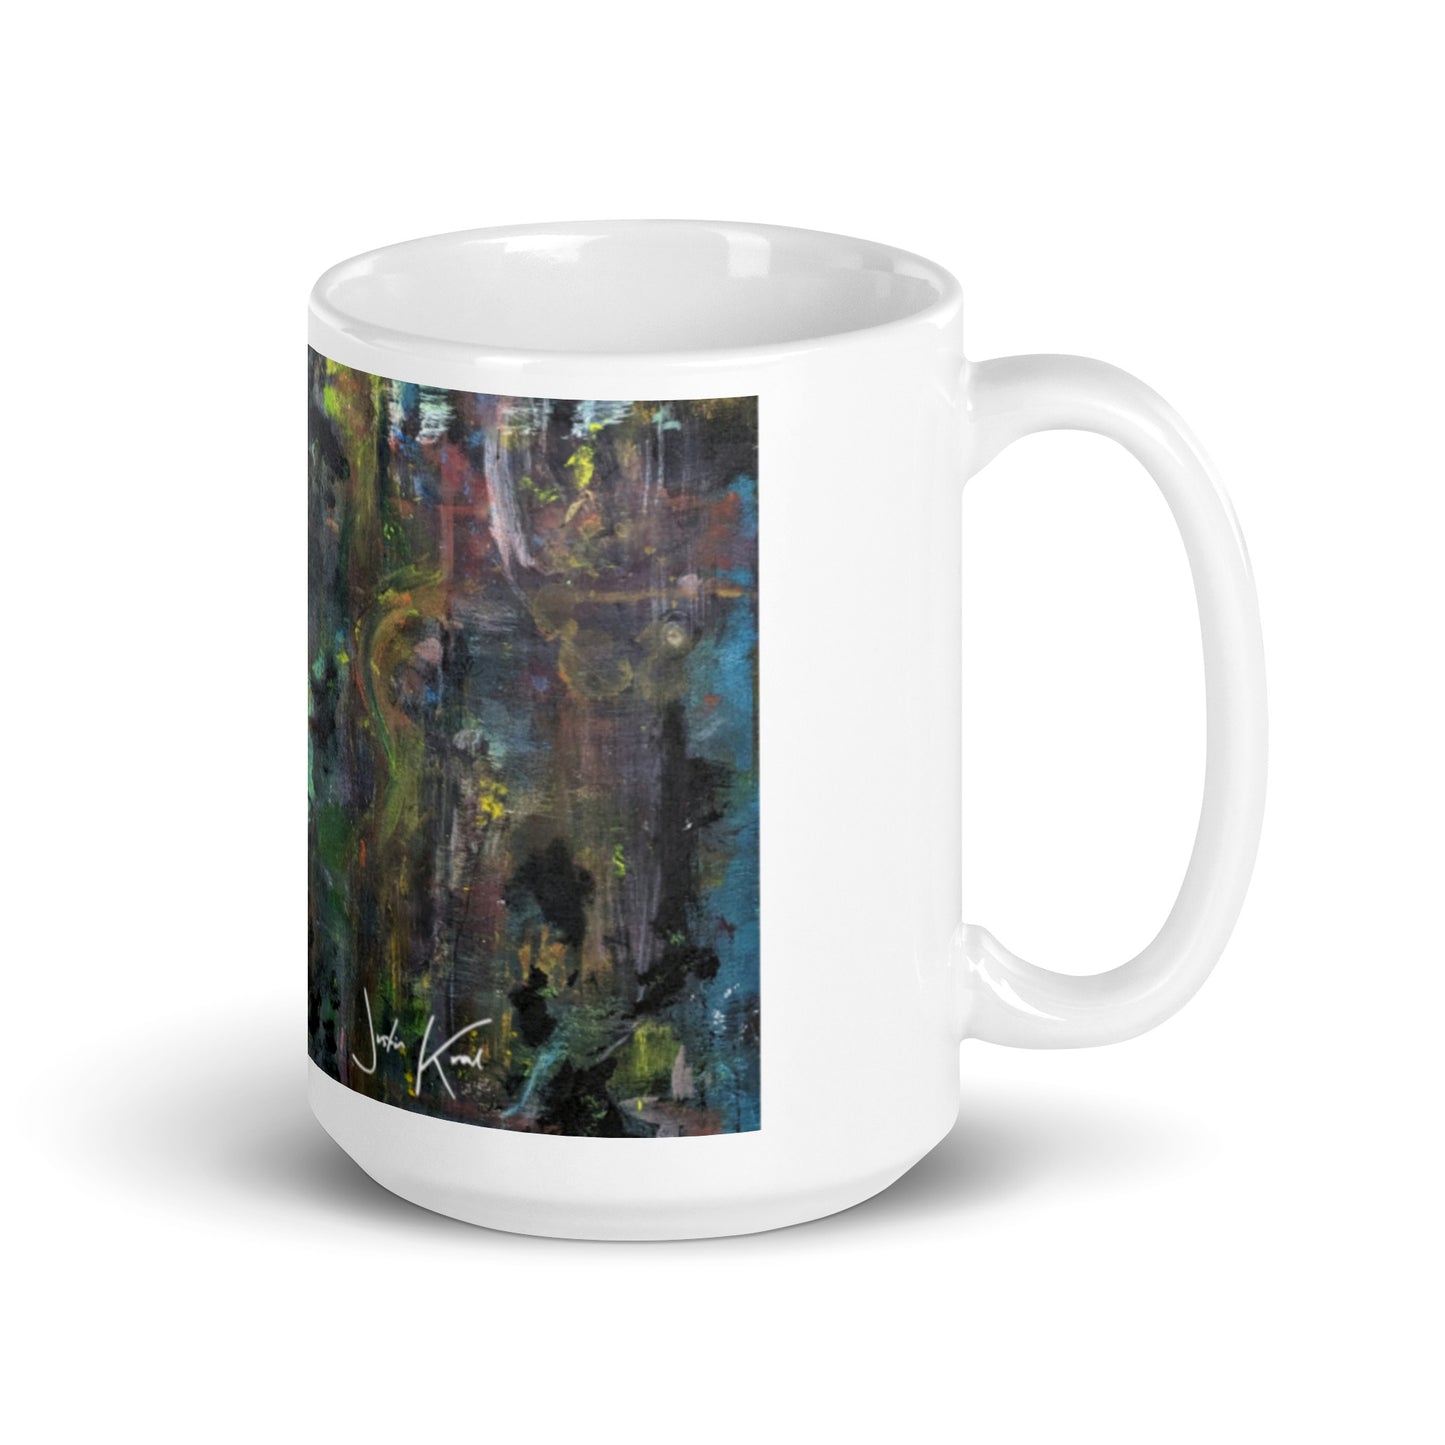 Saint Germain | White glossy mug